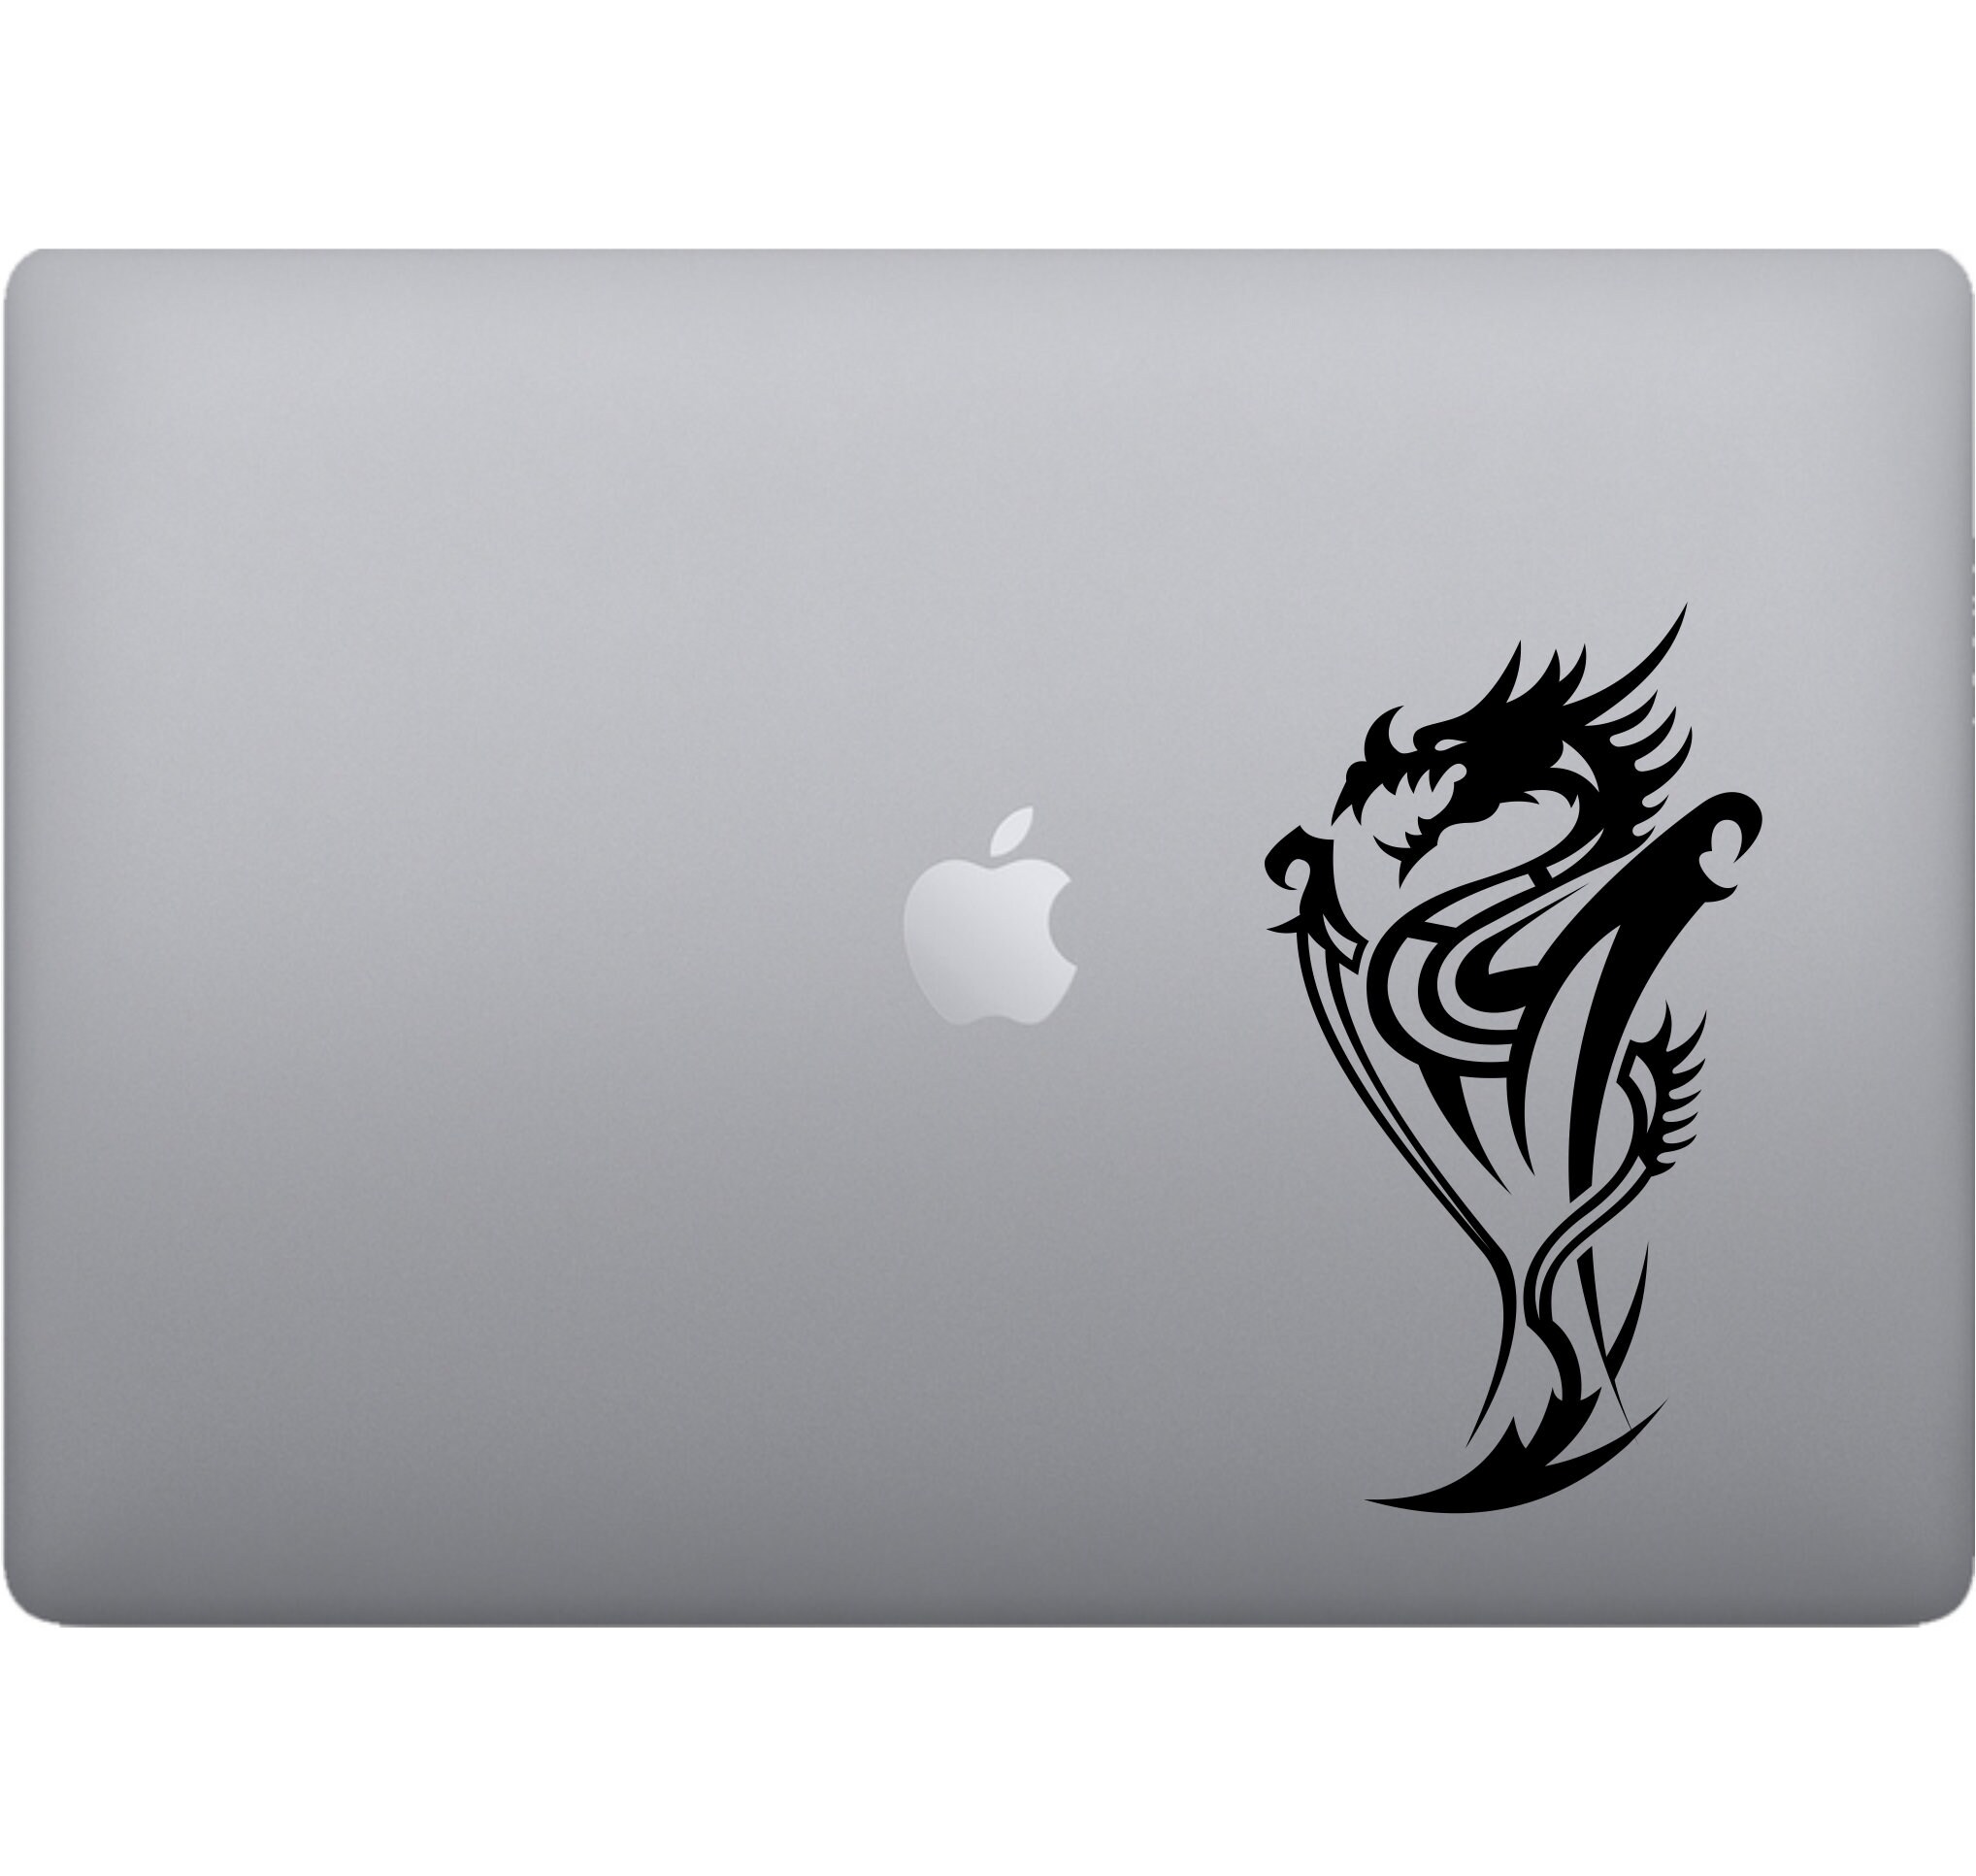 13 Pouces et 15 Pouces Oriental Dragon Macbook Sticker/Autocollant en Vinyle pour Macbook 